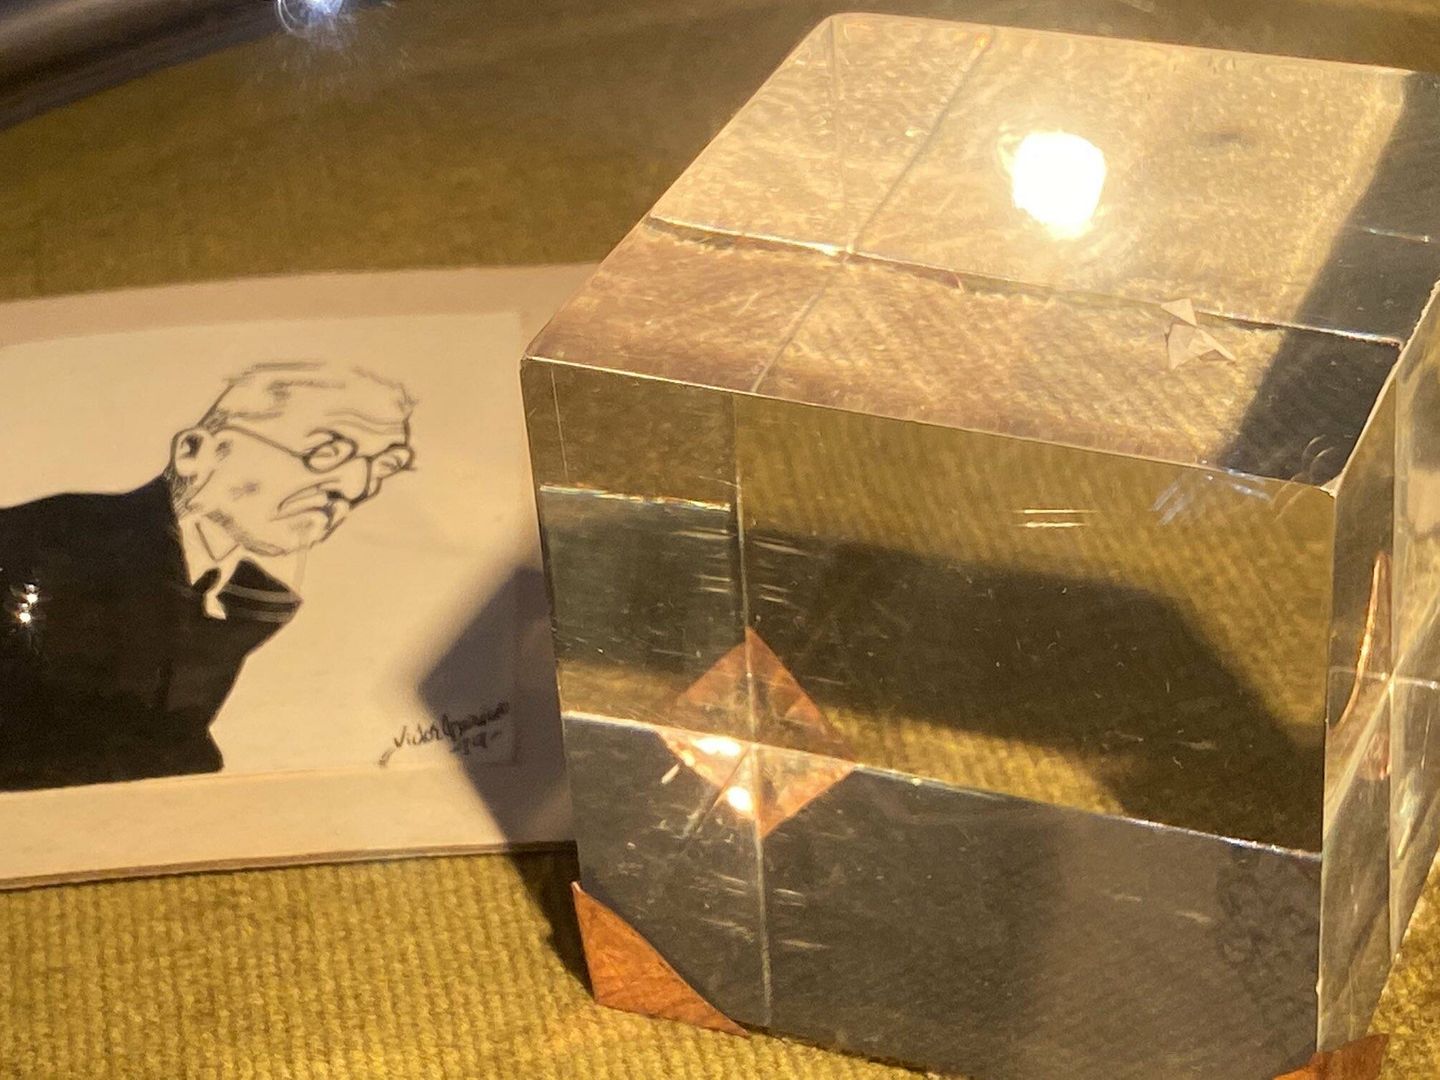 En la esquina superior derecha del cubo de cristal, la pajarita de papel de Unamuno. (E.L)